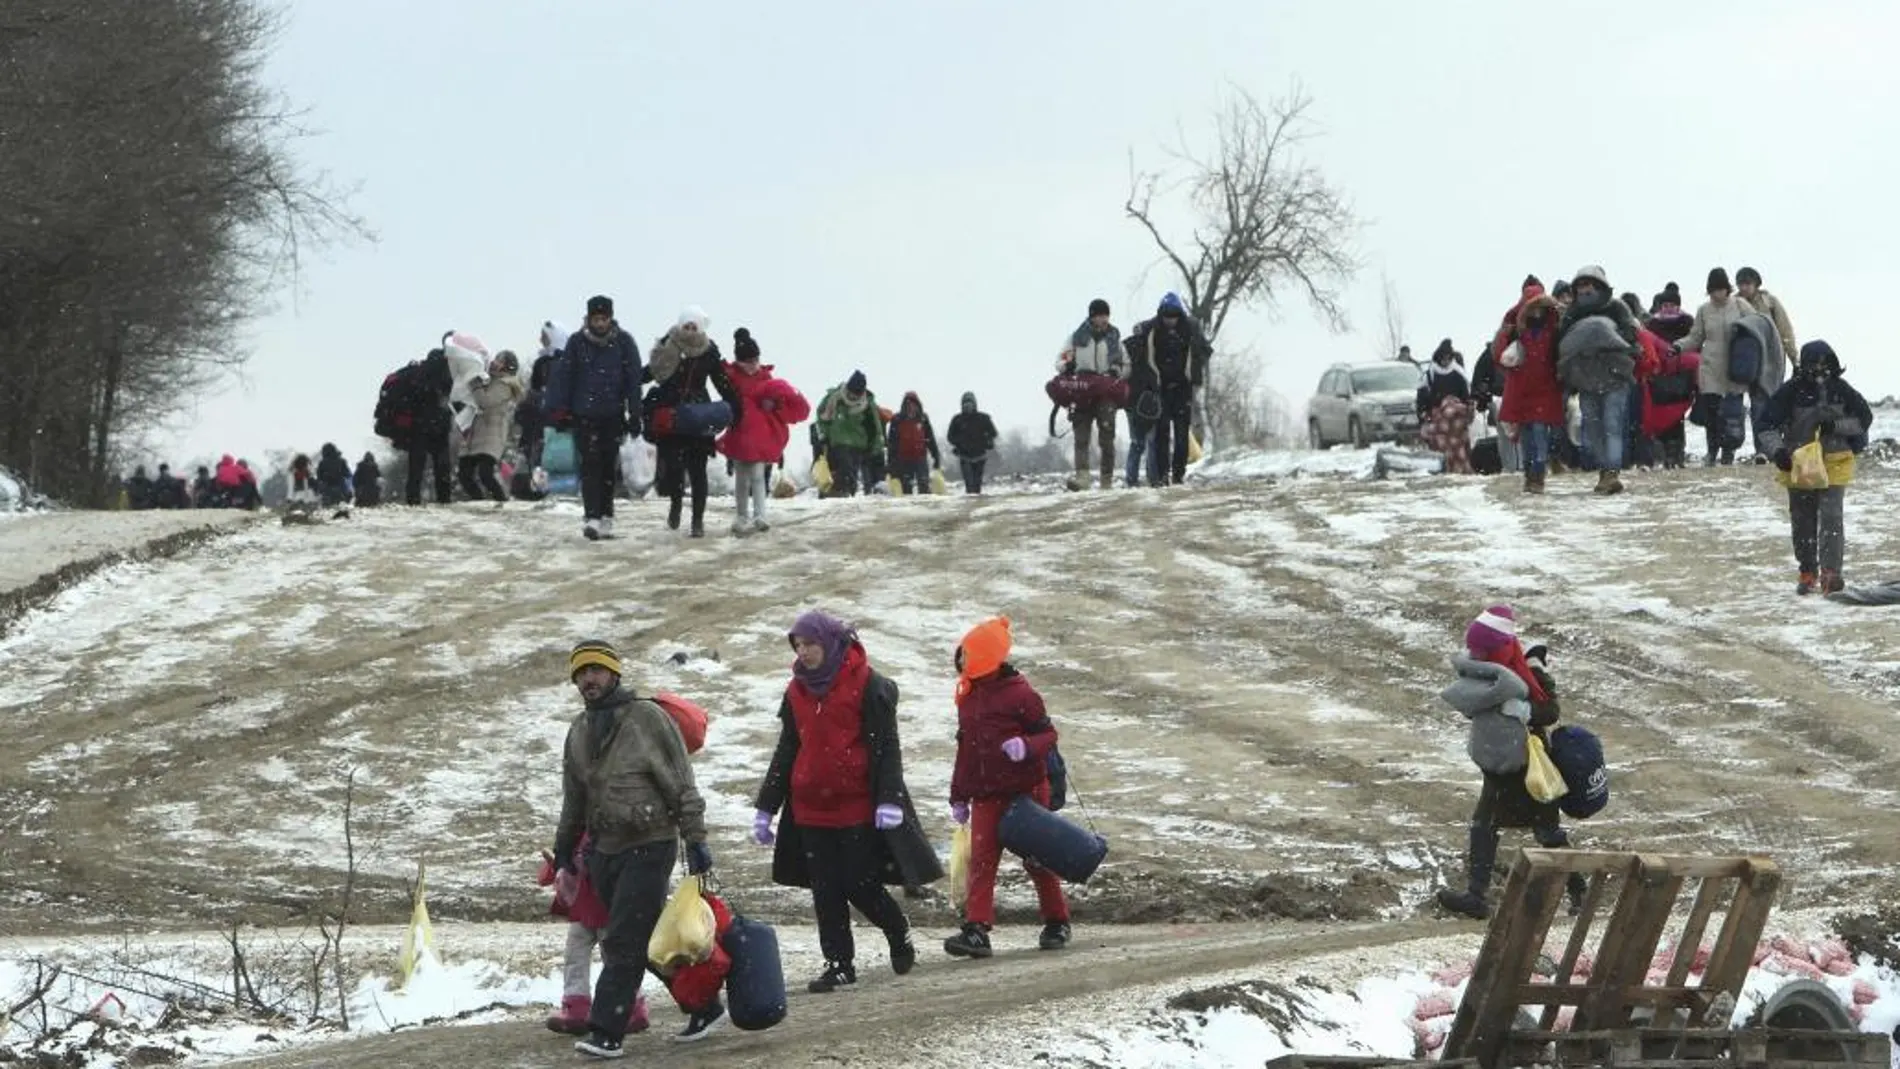 Refugiados de Siria, Irak y Afganistán caminan hacia un campamento temporal para inmigrantes en el pueblo de Miratovac, en Serbia